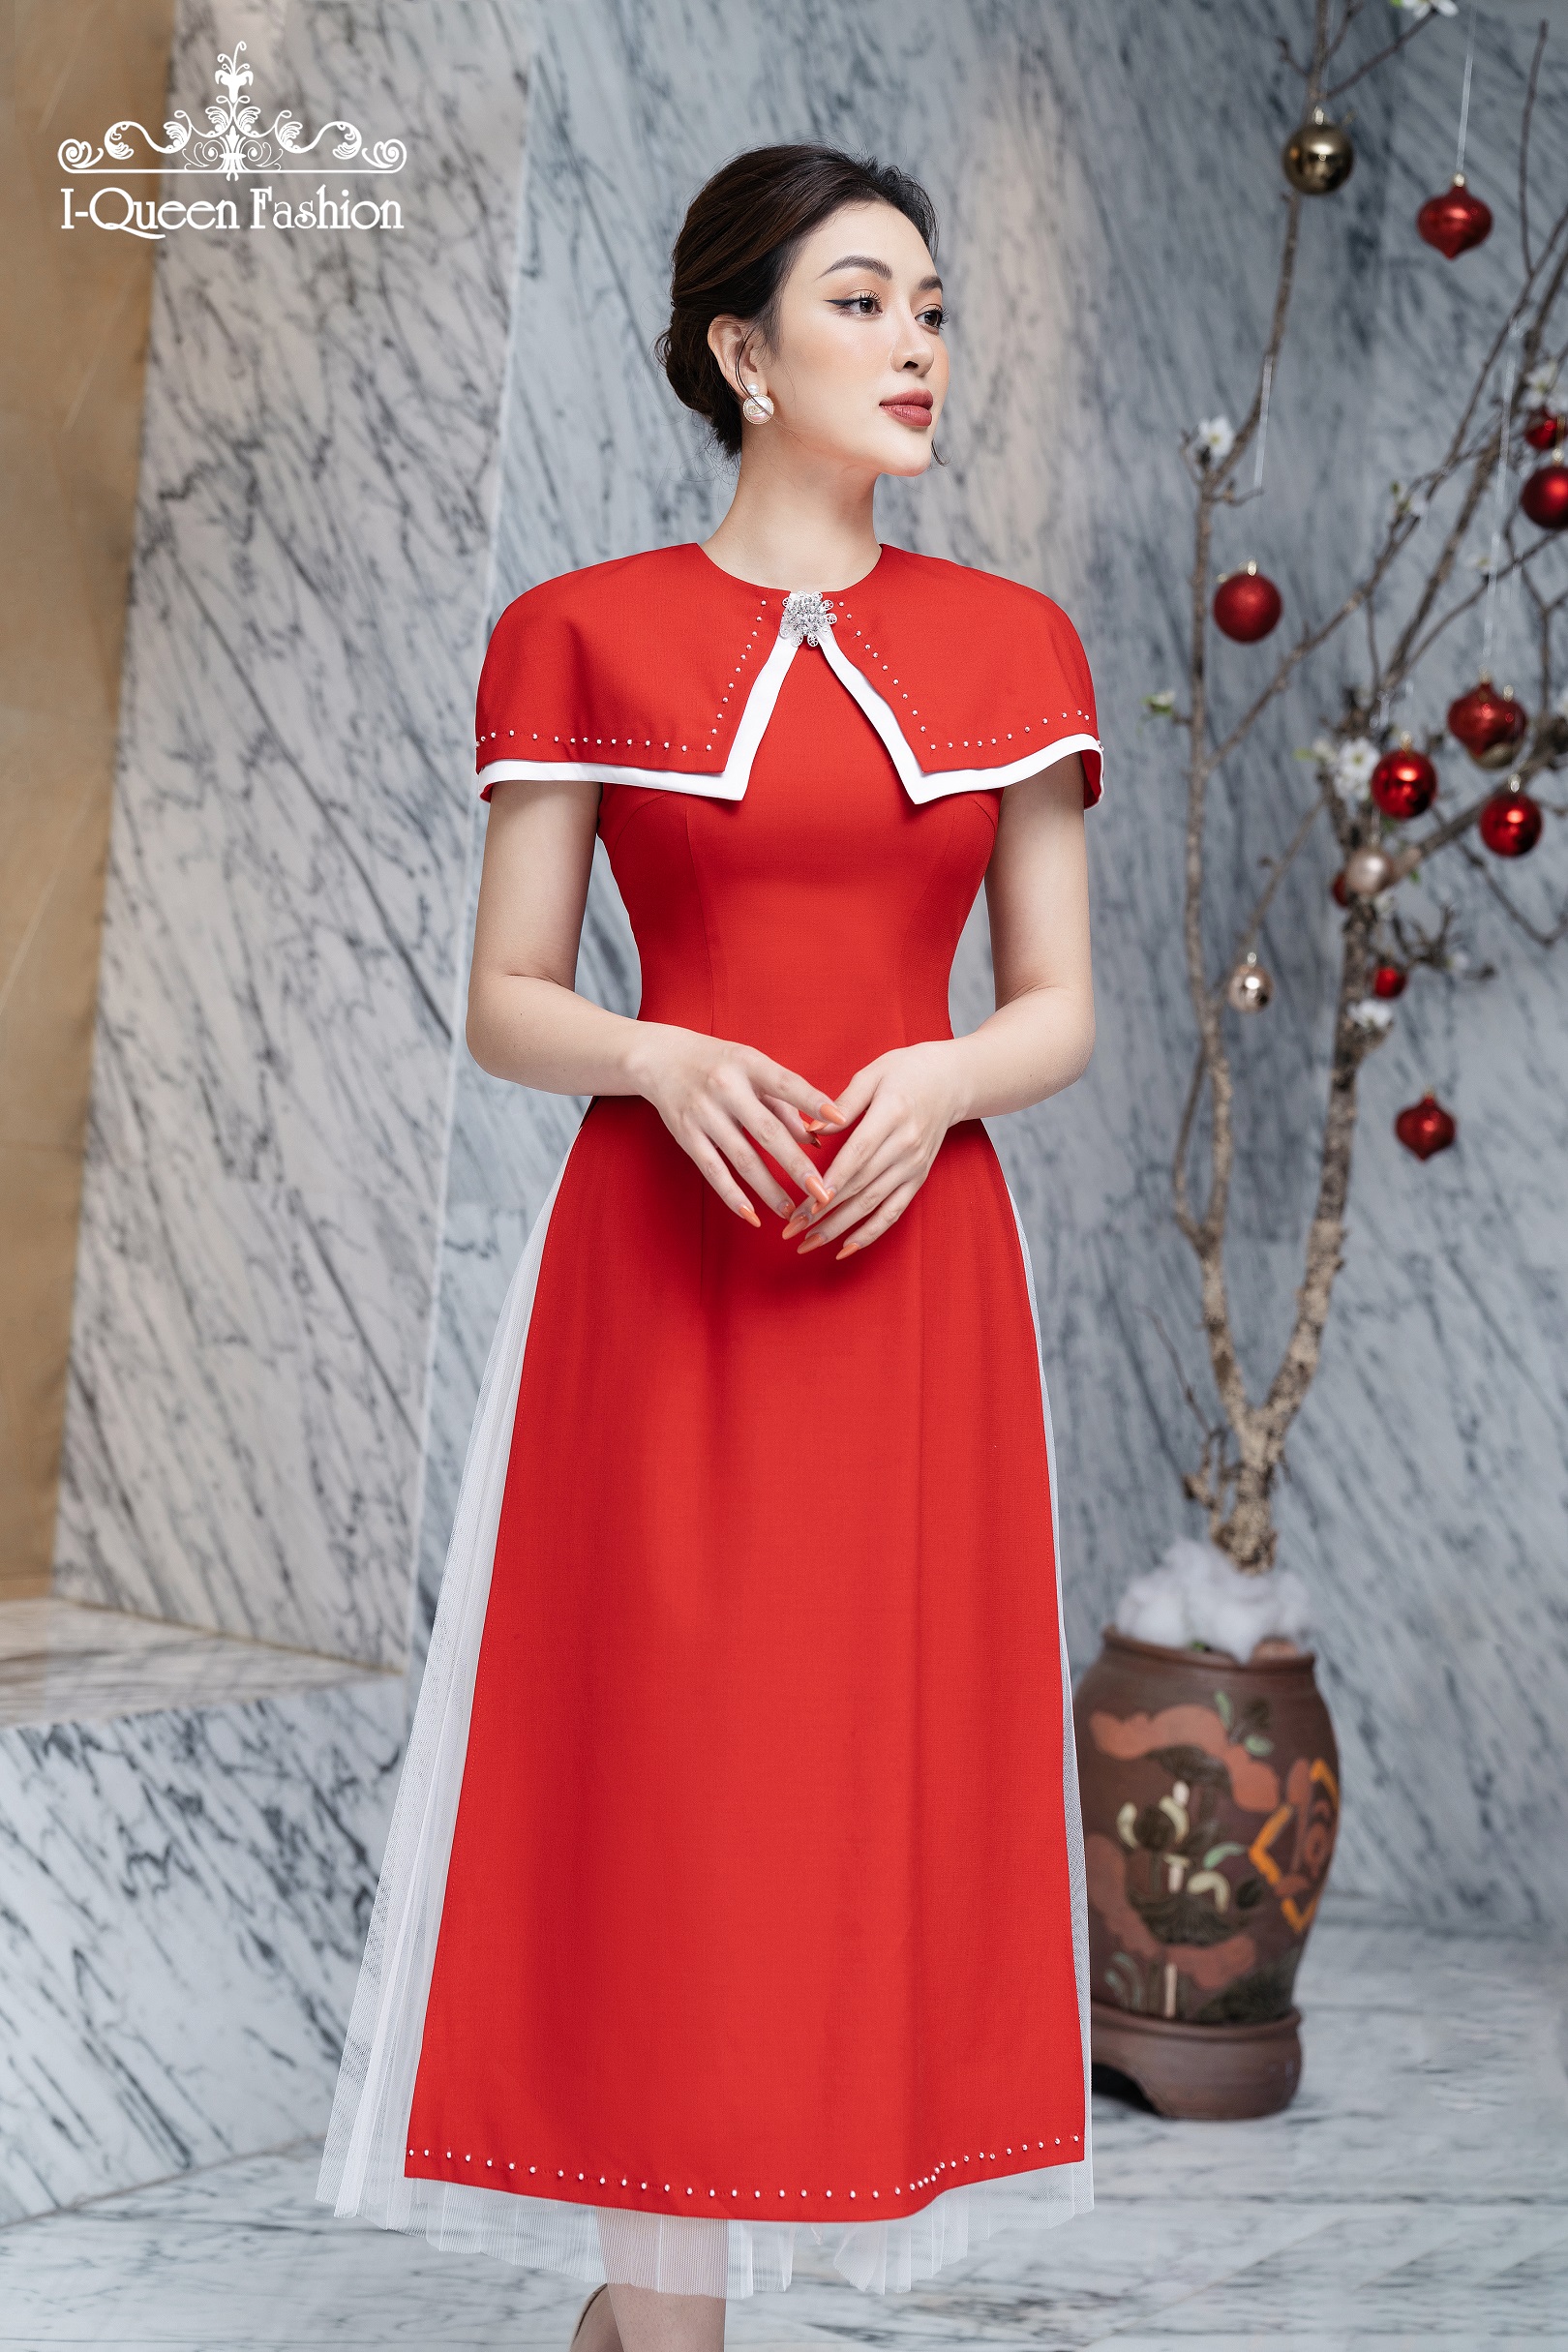 Đầm xòe đỏ tay dài cổ trụ xinh xắn (kèm belt) - Hàng đẹp với giá tốt nhất